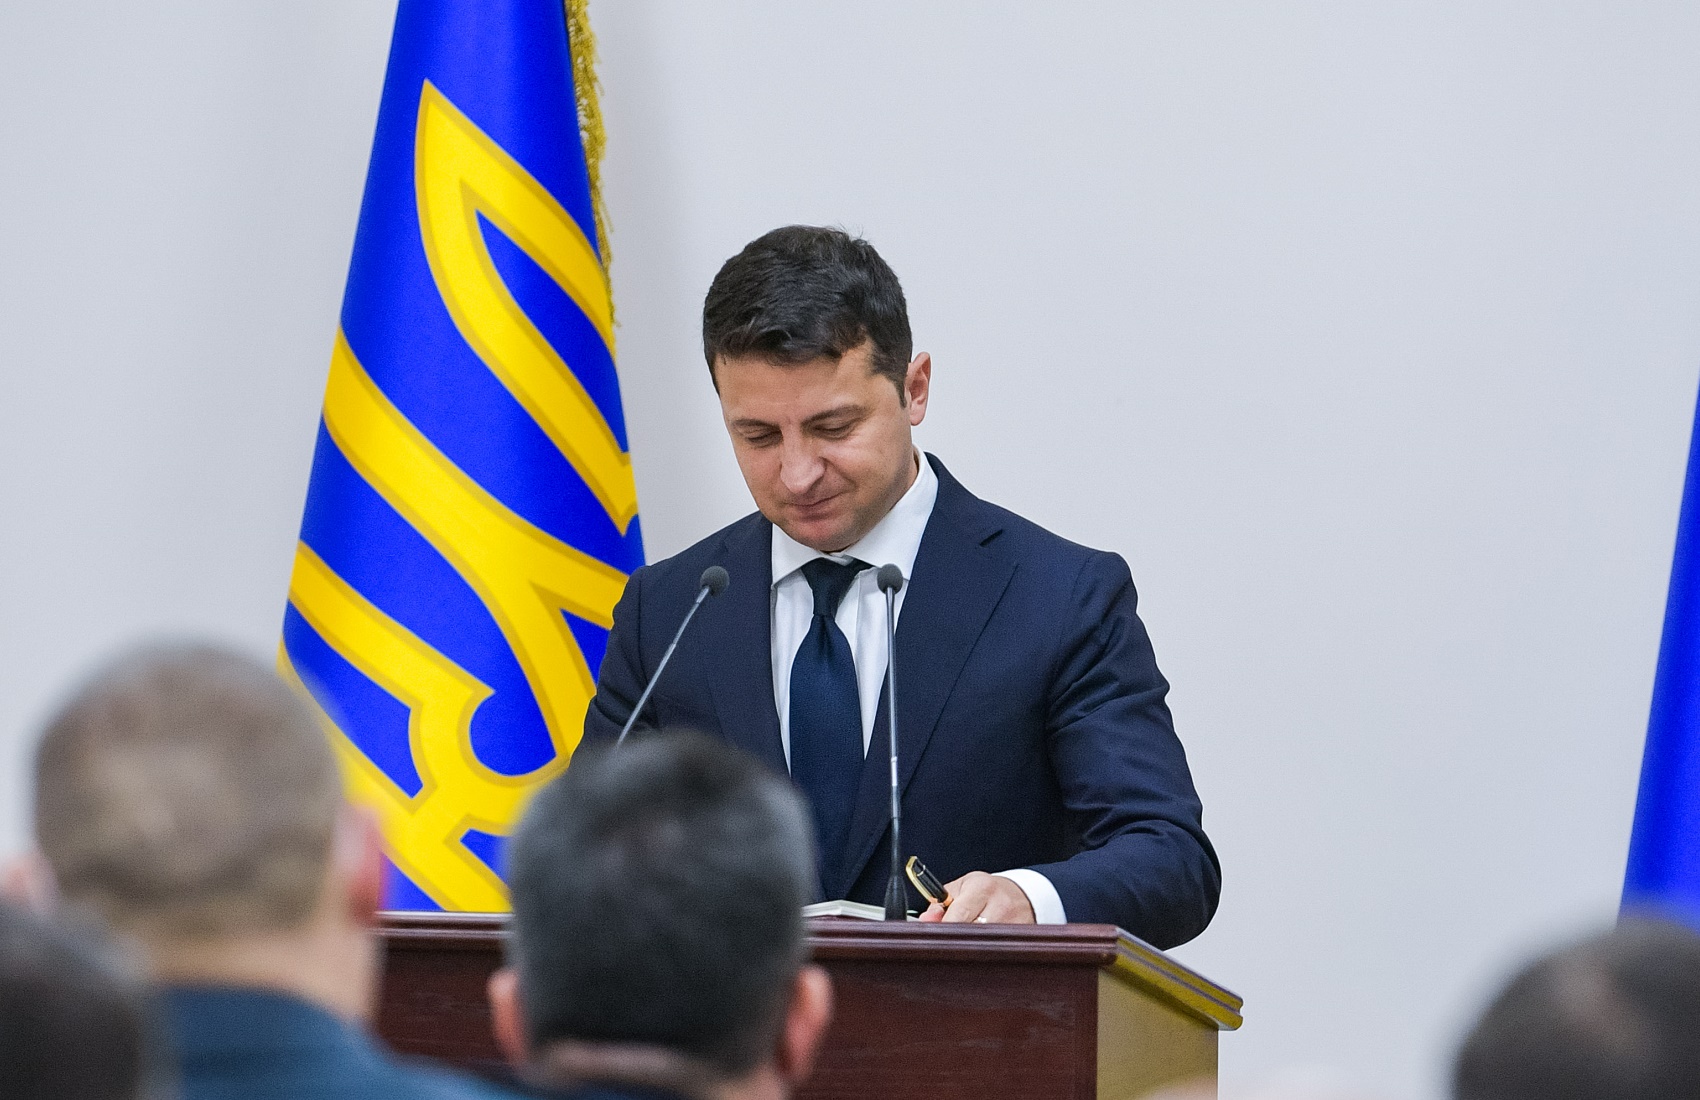 Зеленский: в Конституции не было написано, что Янукович лишается полномочий из-за побега